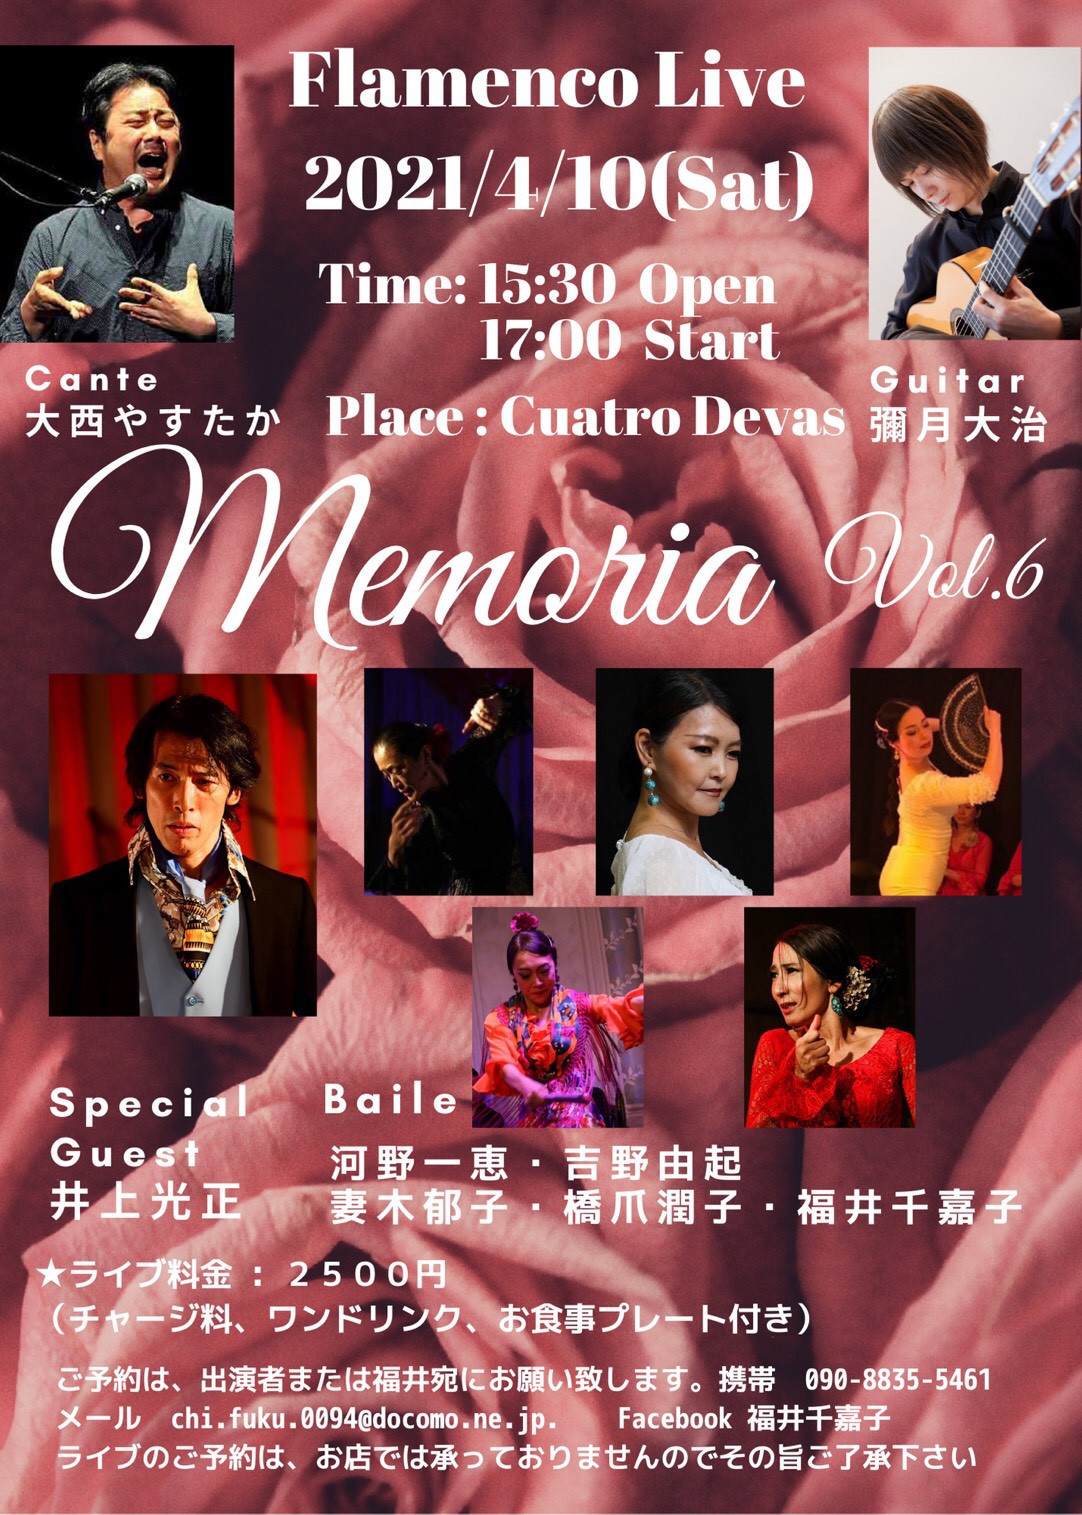 ご予約満席となりました】4月10日(土)Flamenco Live Memoria vol.6 に ...